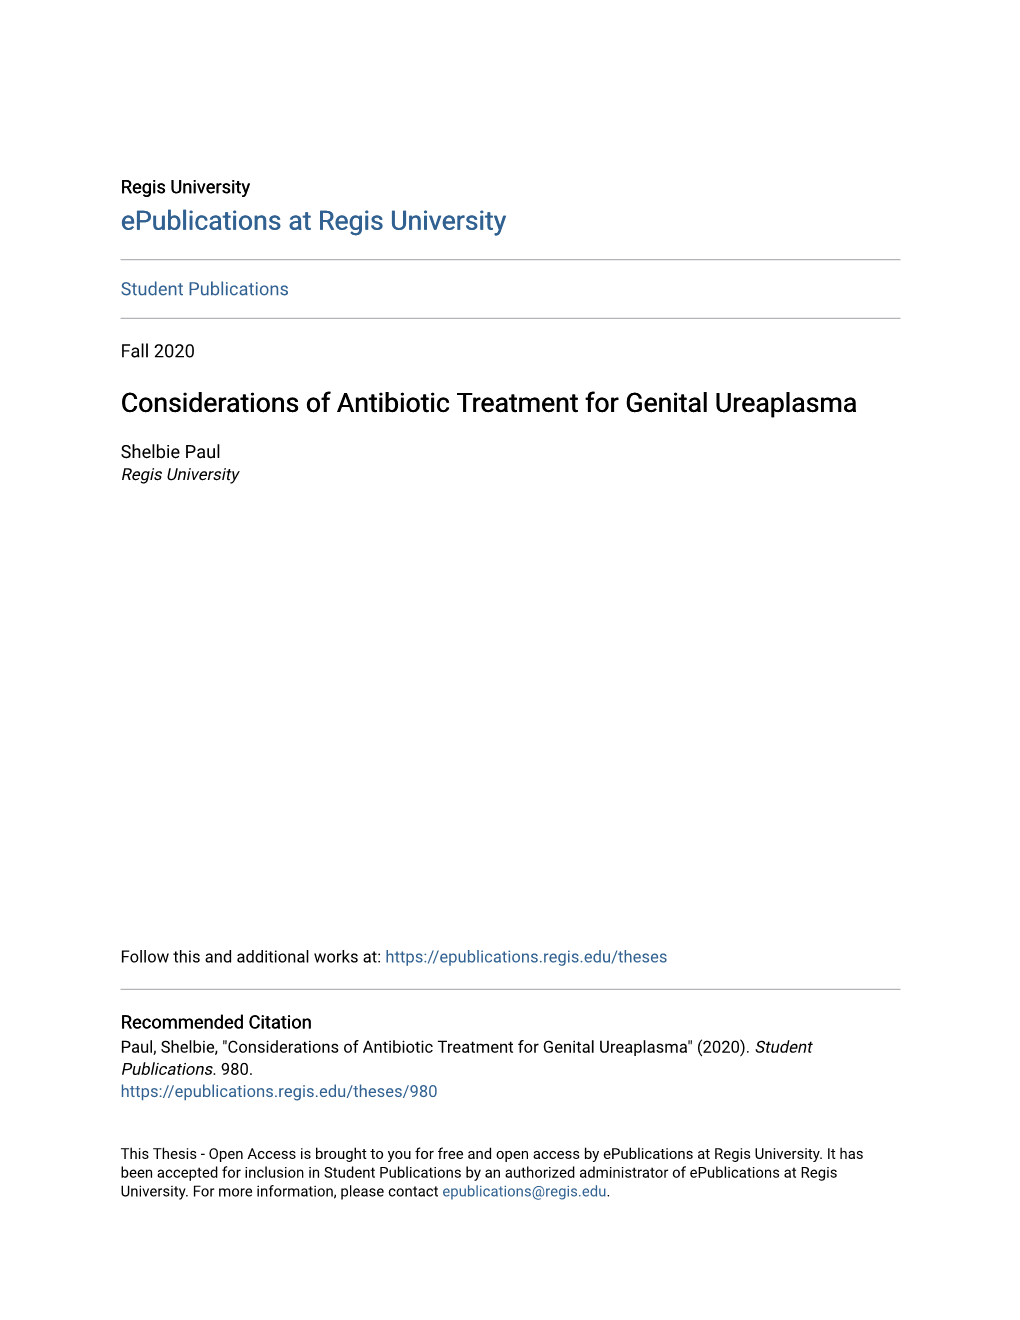 Considerations of Antibiotic Treatment for Genital Ureaplasma